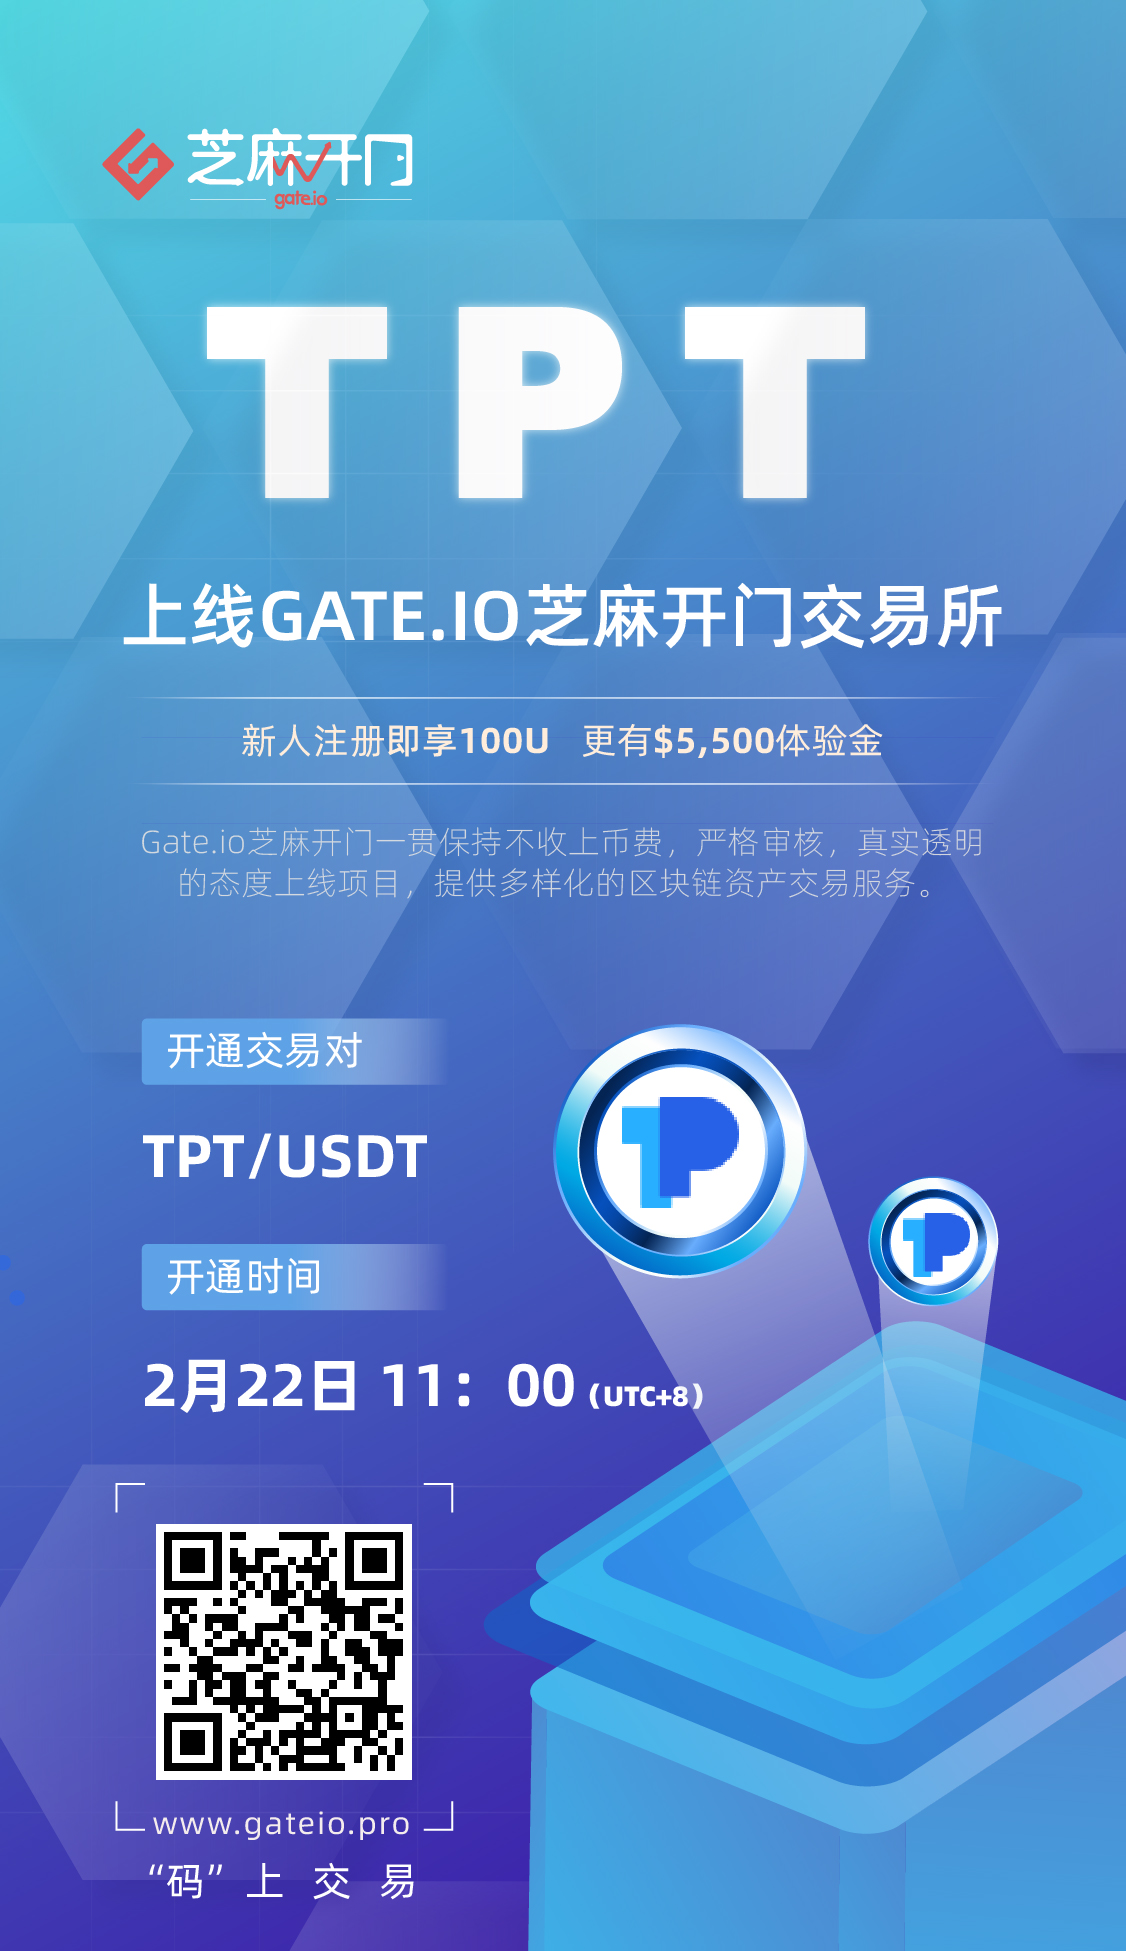 Gate.io芝麻开门关于完成投票和上线 TokenPocket （TPT）交易的公告